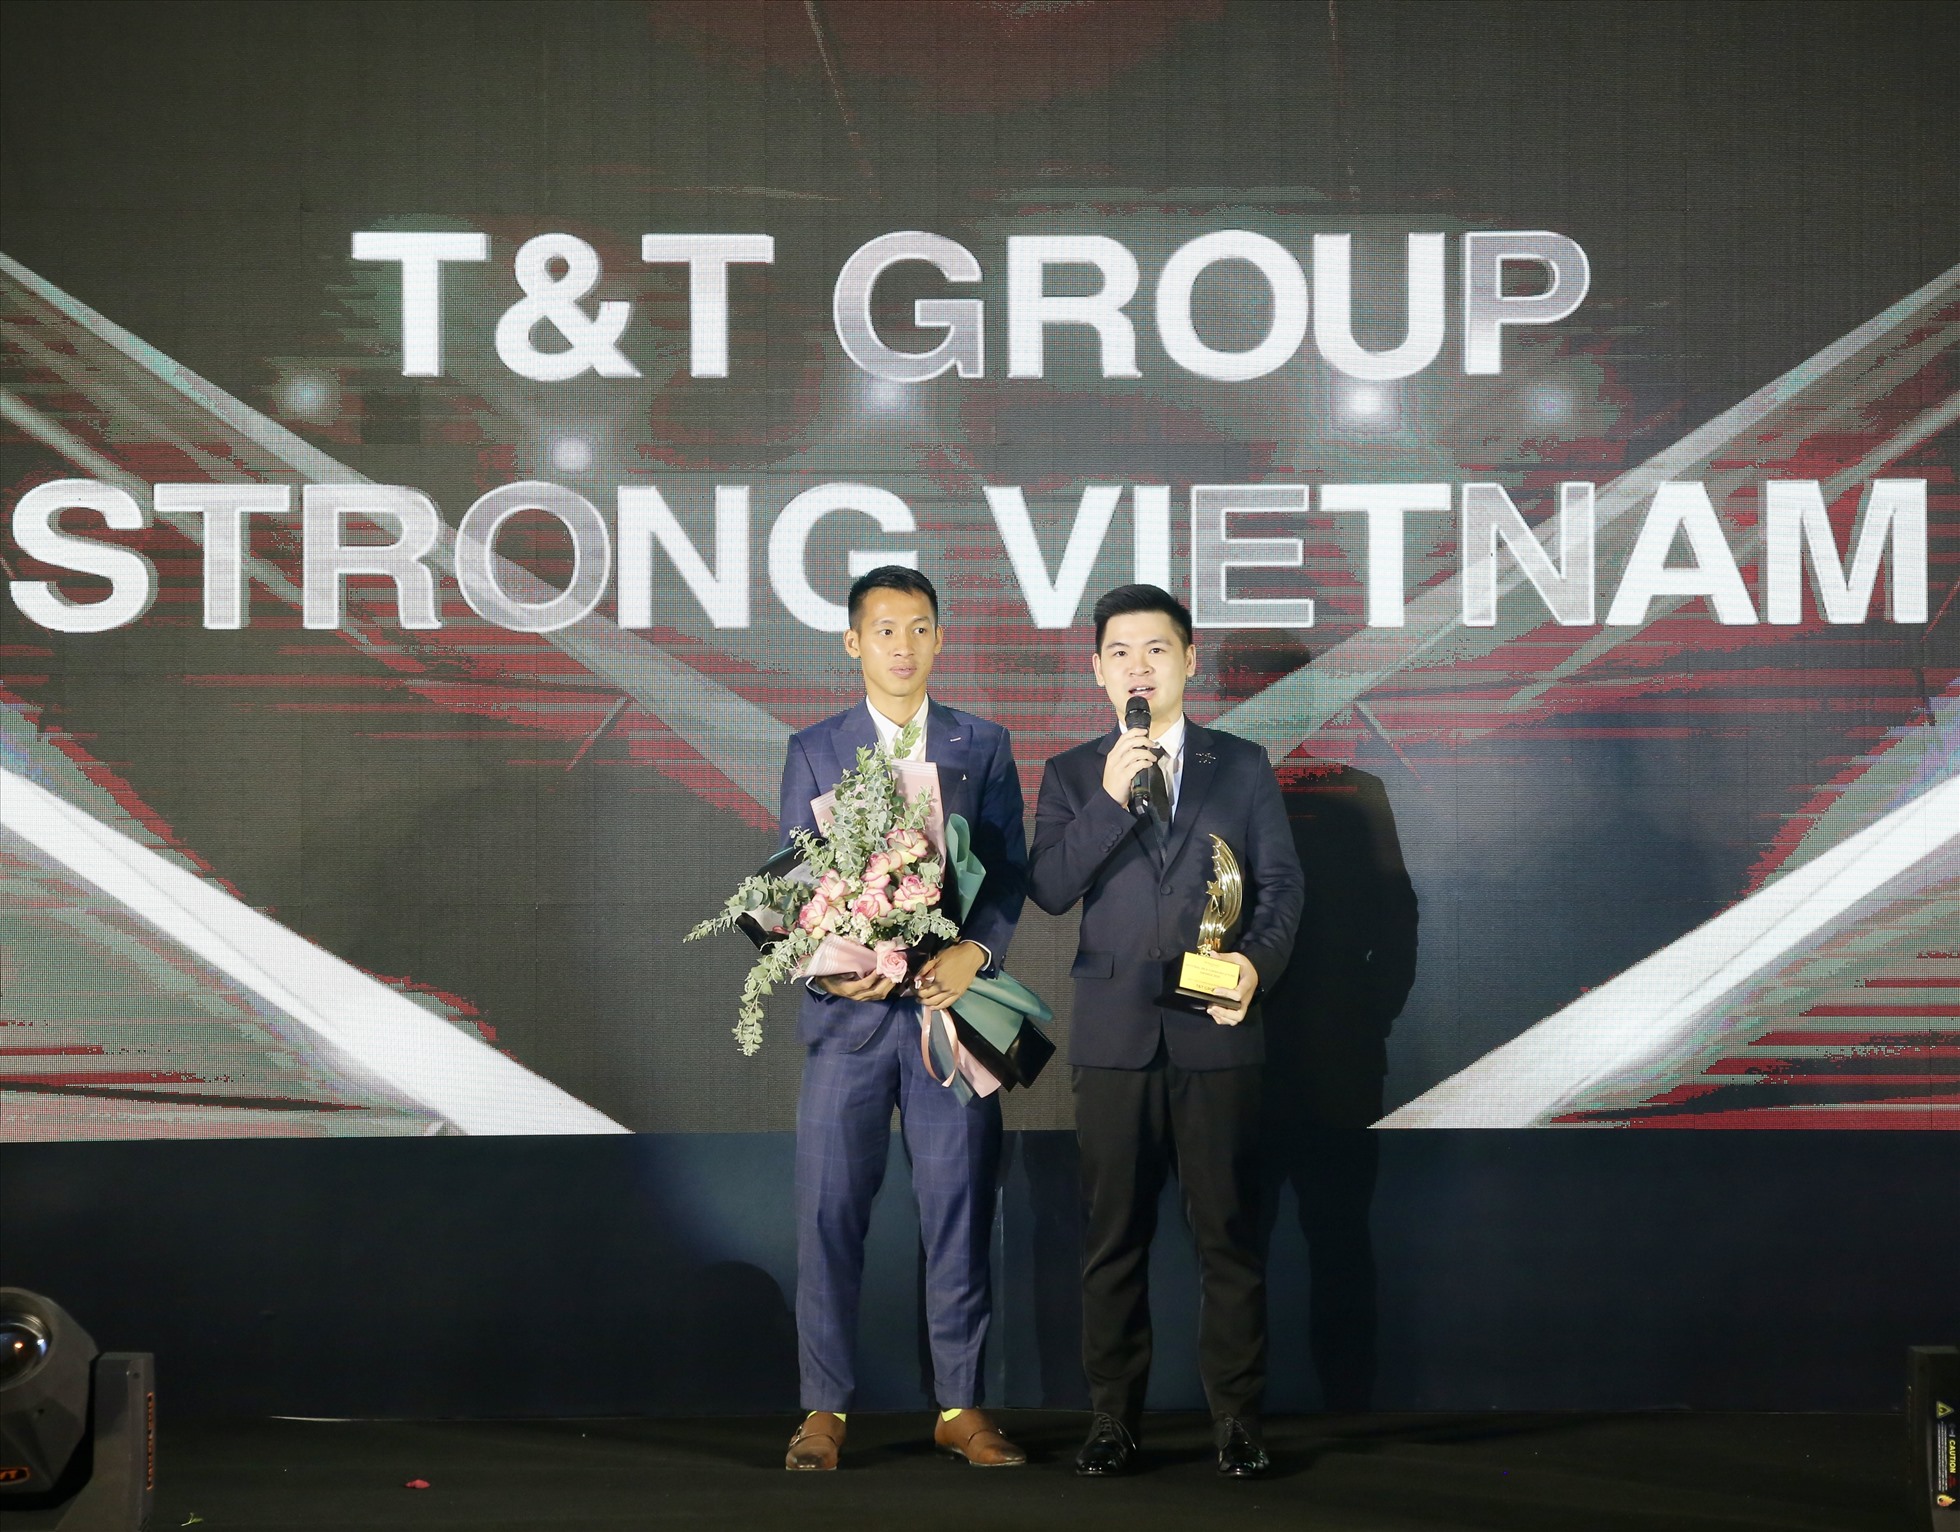 Chương trình Strong Vietnam do ông Đỗ Vinh Quang khởi xướng đã chiến thắng giải thưởng Trách nhiệm Xã hội (CSR) xuất sắc nhất tại lễ trao Giải thưởng Quốc Gia truyền thông & quan hệ công chúng năm 2020.